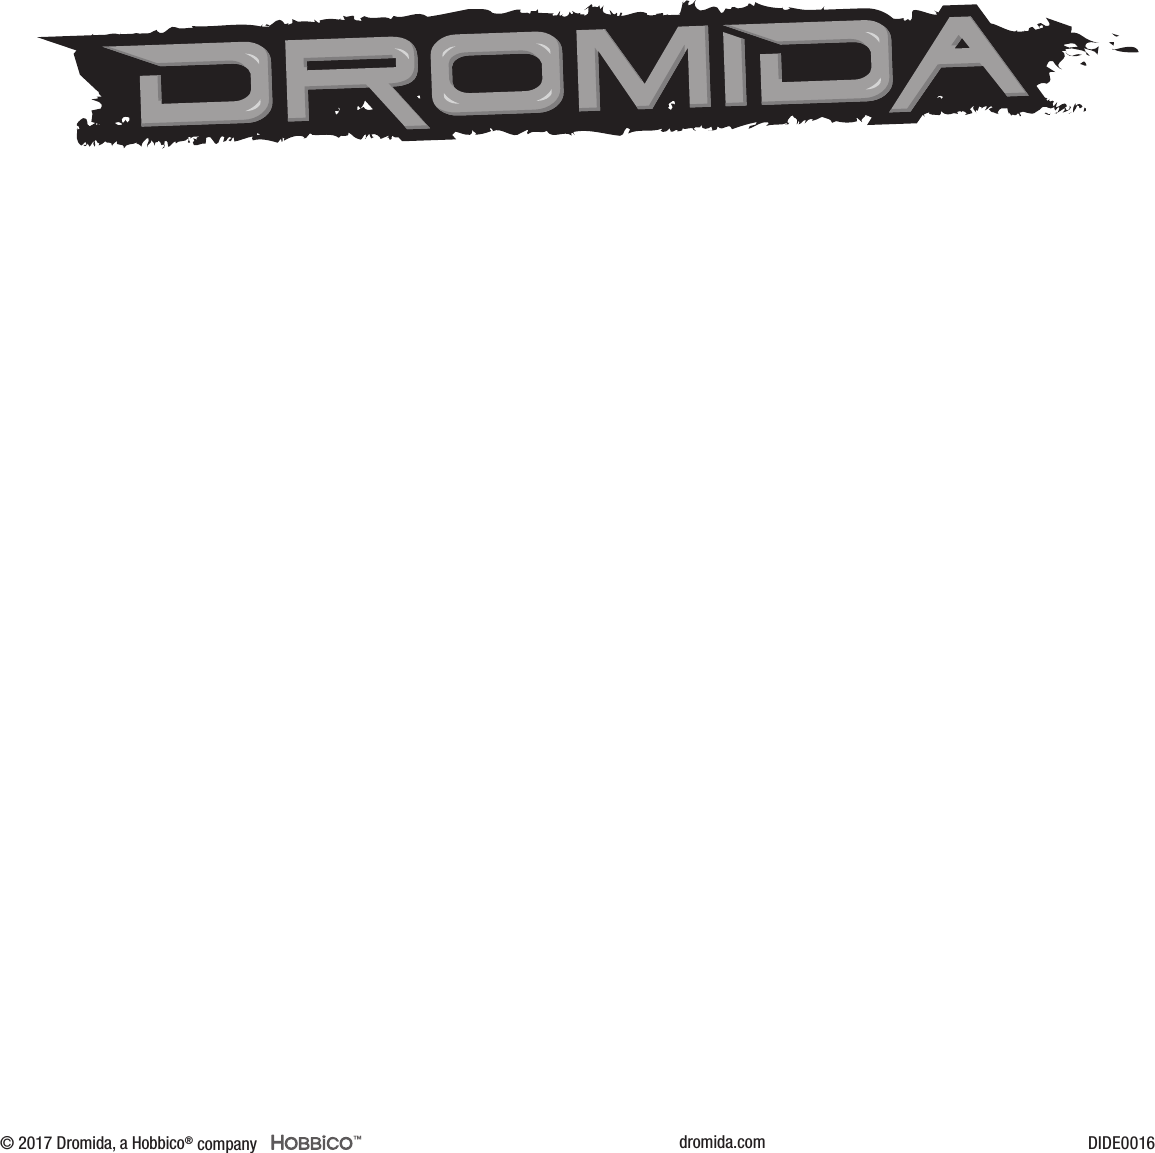 dromida.com DIDE0016© 2017 Dromida, a Hobbico® company ™